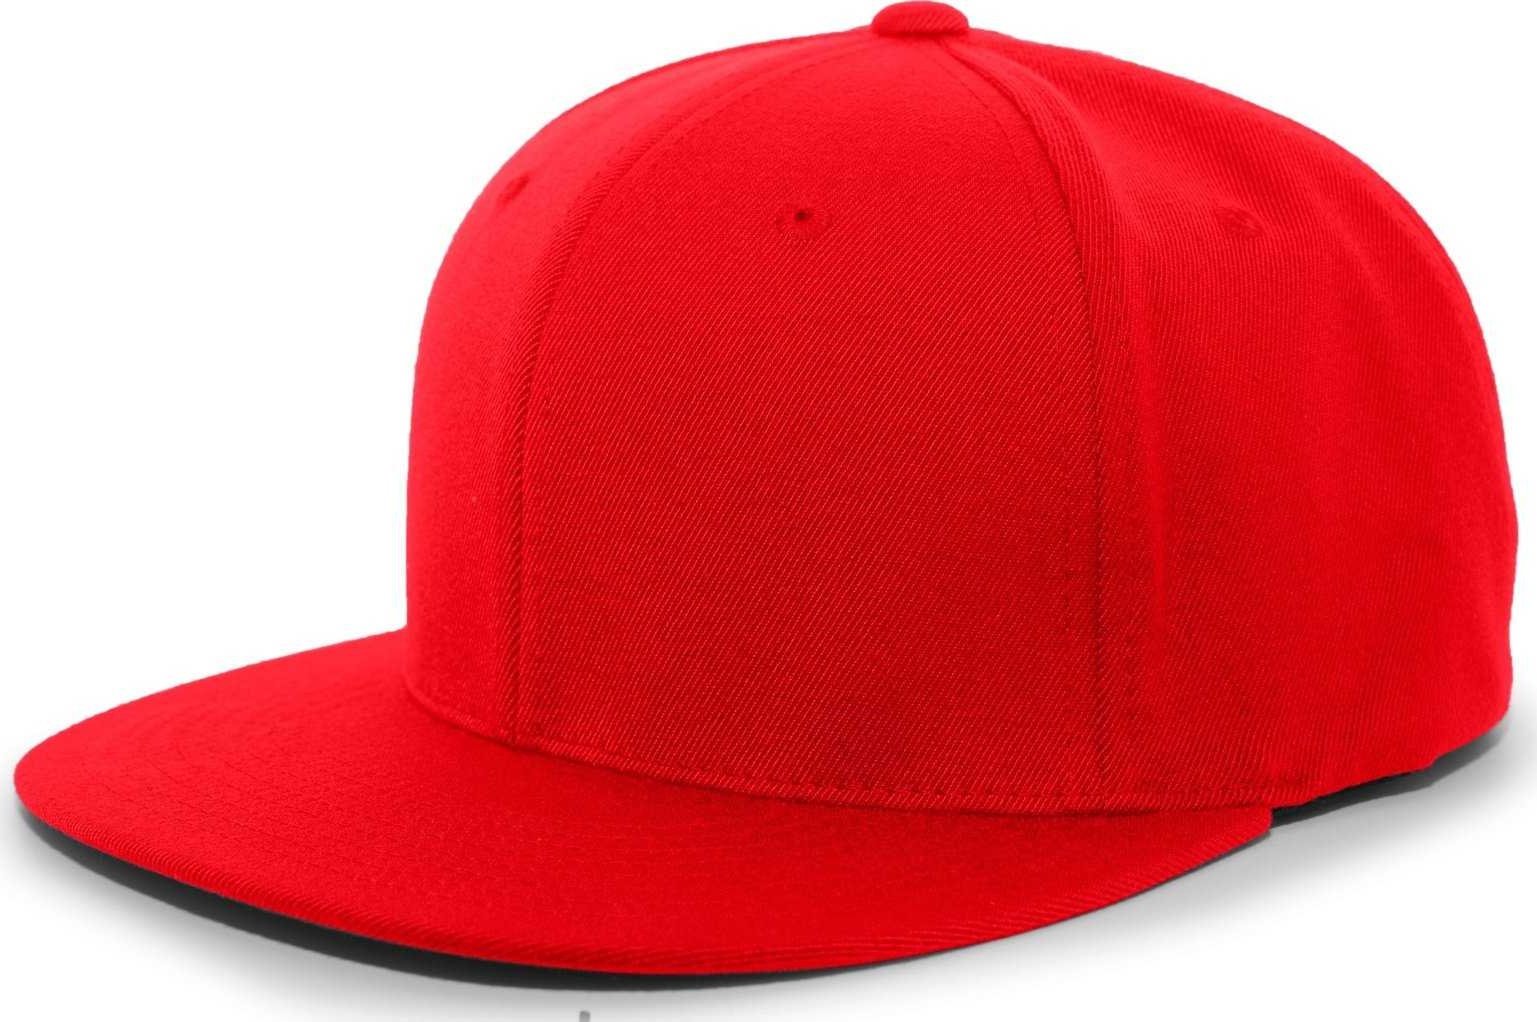 Pacific Headwear 8D5 A/C?ý Performance D-Series Flexfit Cap - Red - HIT a Double